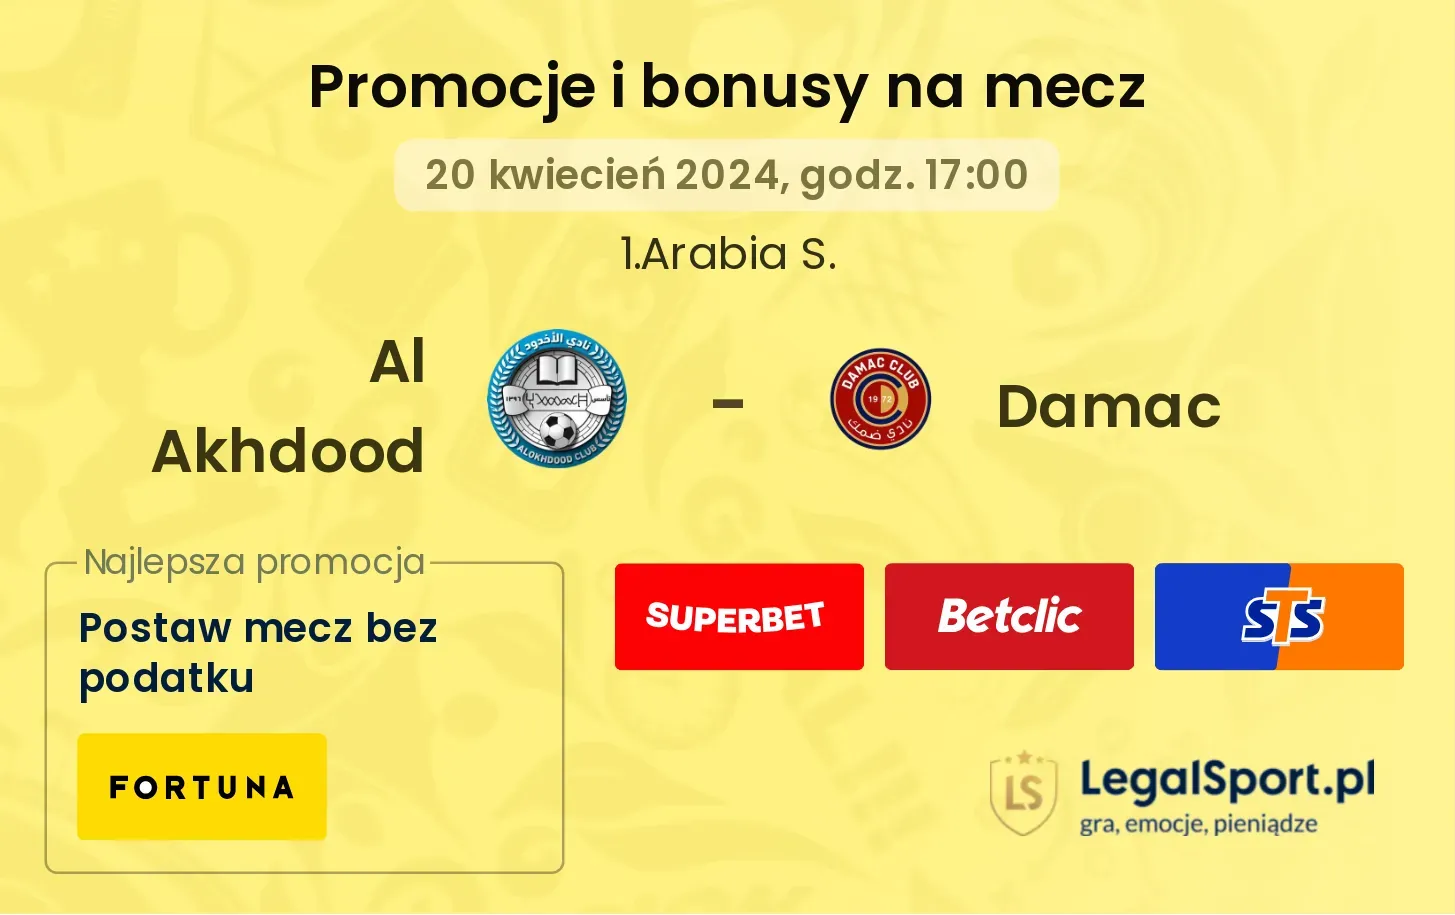 Al Akhdood - Damac promocje bonusy na mecz